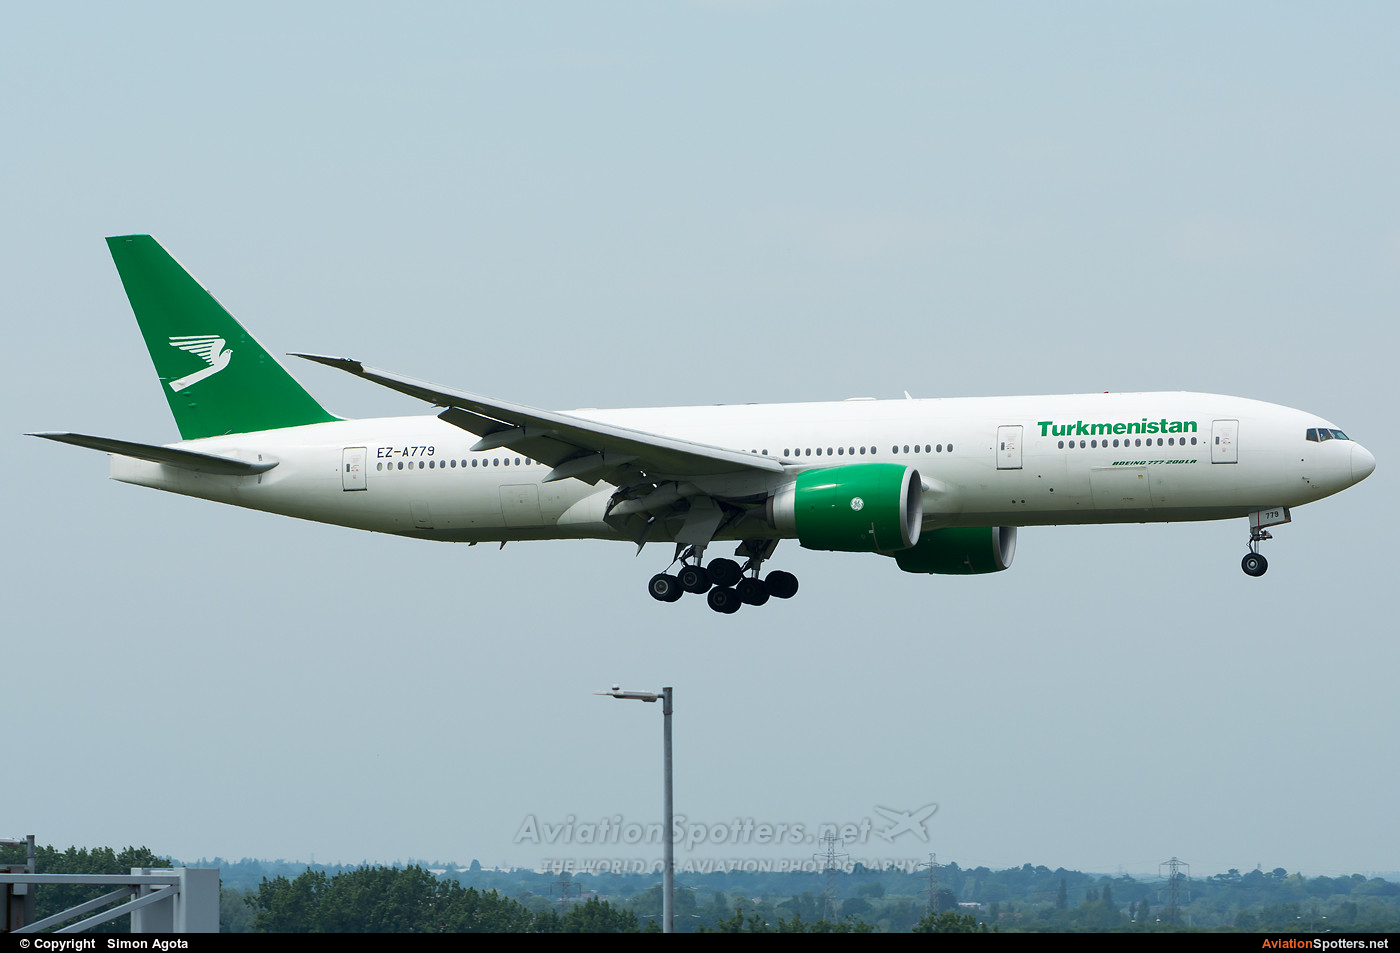 Turkmenistan Airlines  -  777-200LR  (EZ-A779) By Simon Agota (goti80)